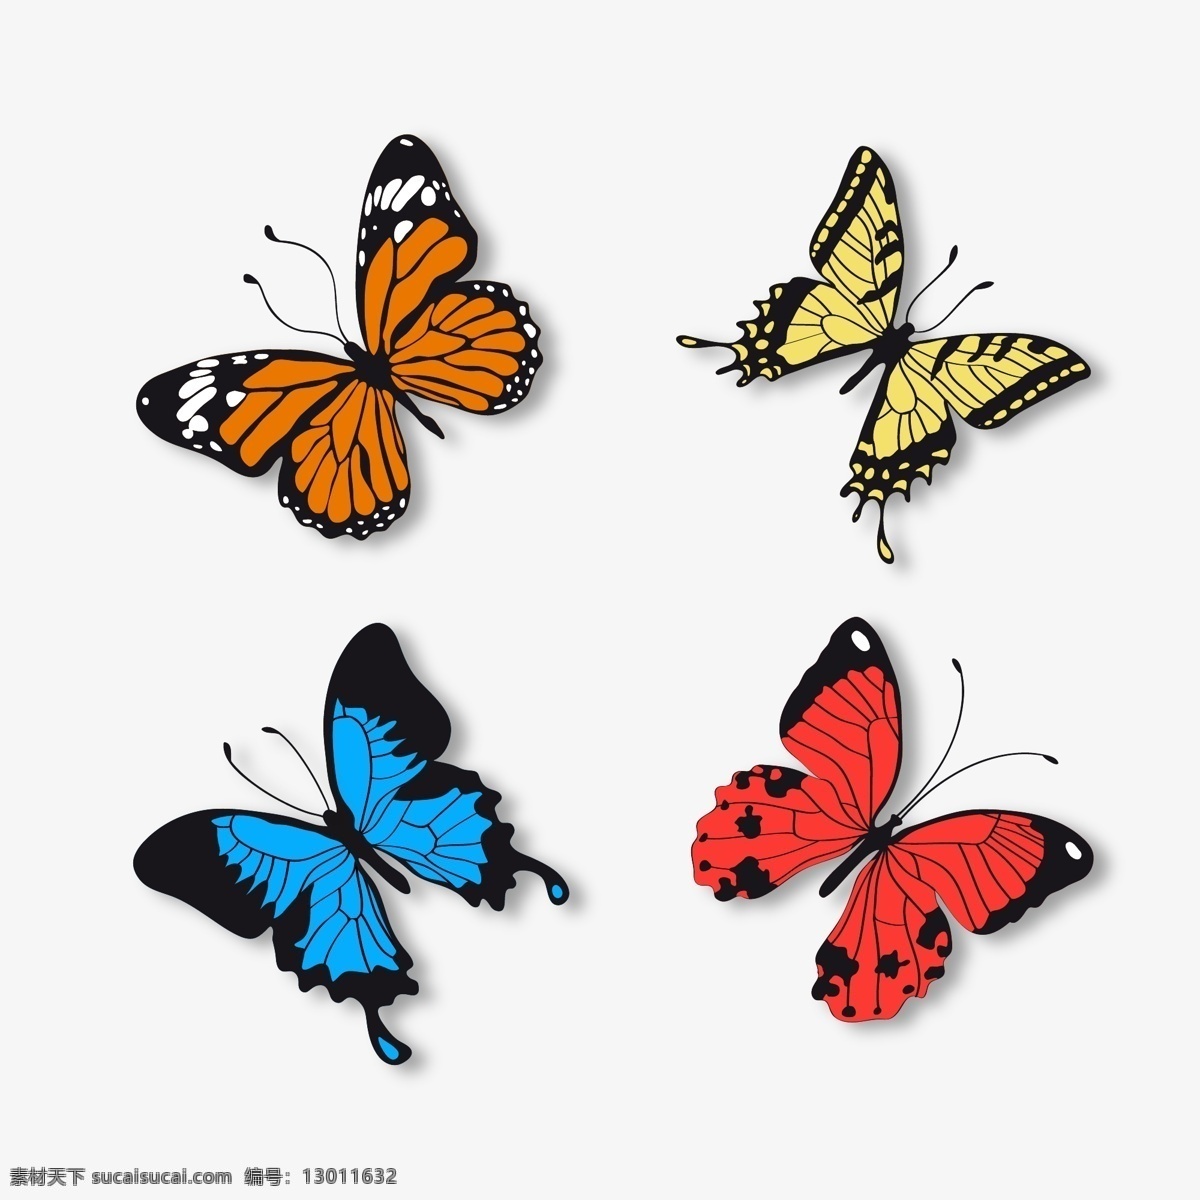 蝴蝶矢量素材 蝴蝶矢量 蝴蝶素材 蝴蝶 蝶 butterfly 共享设计 矢量 生物世界 昆虫